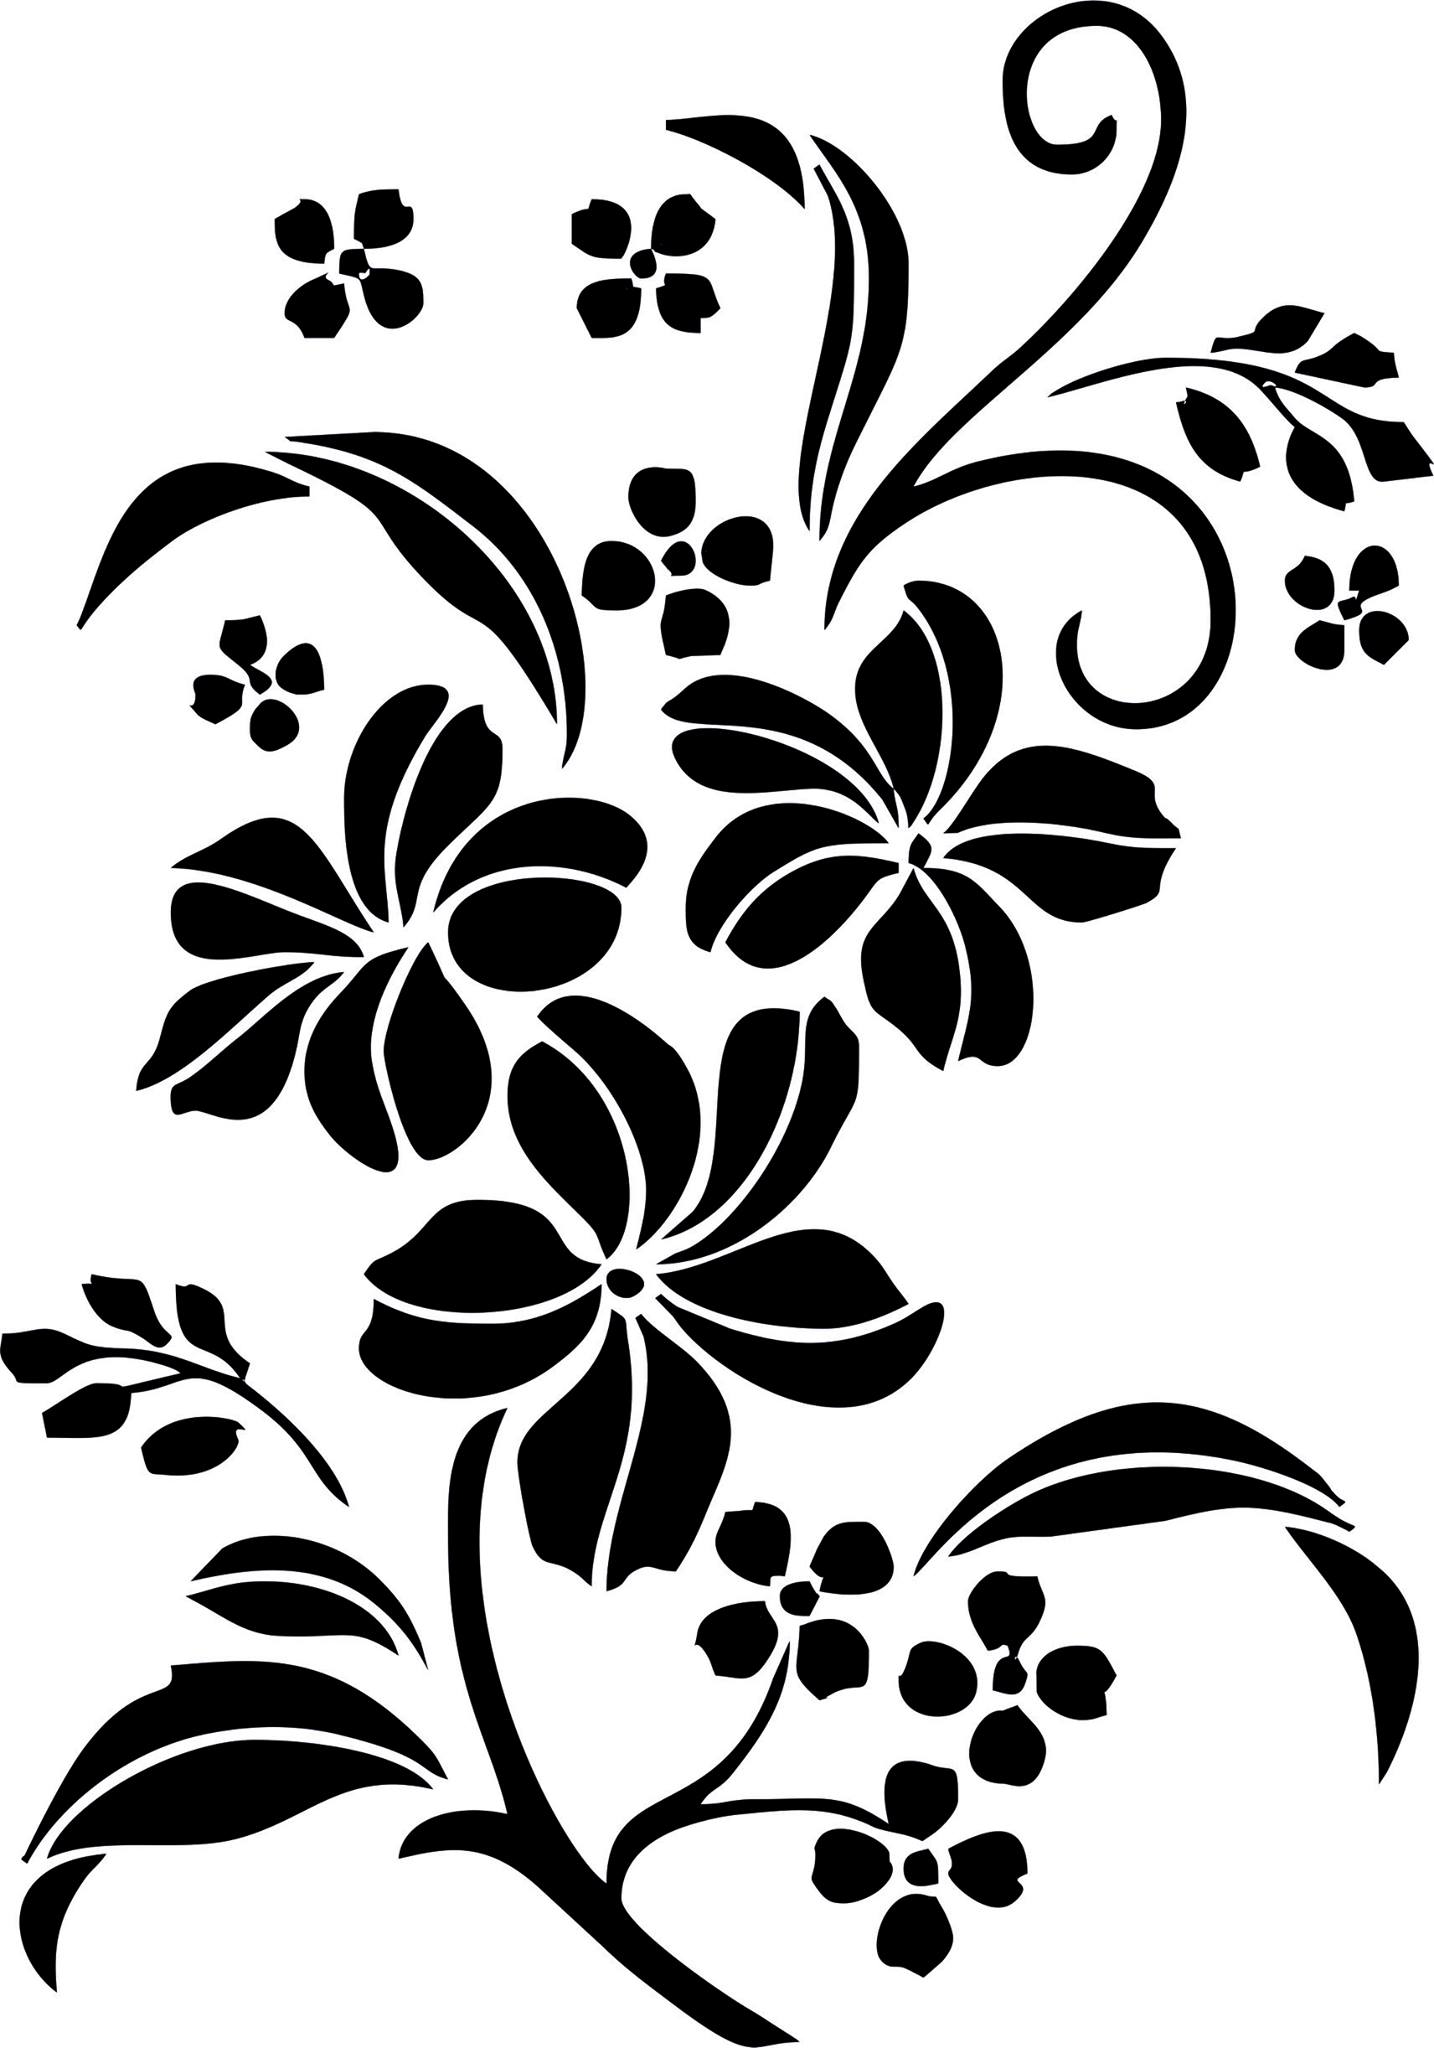 Imagem jpg de arte vetorial ornamento floral decorativo